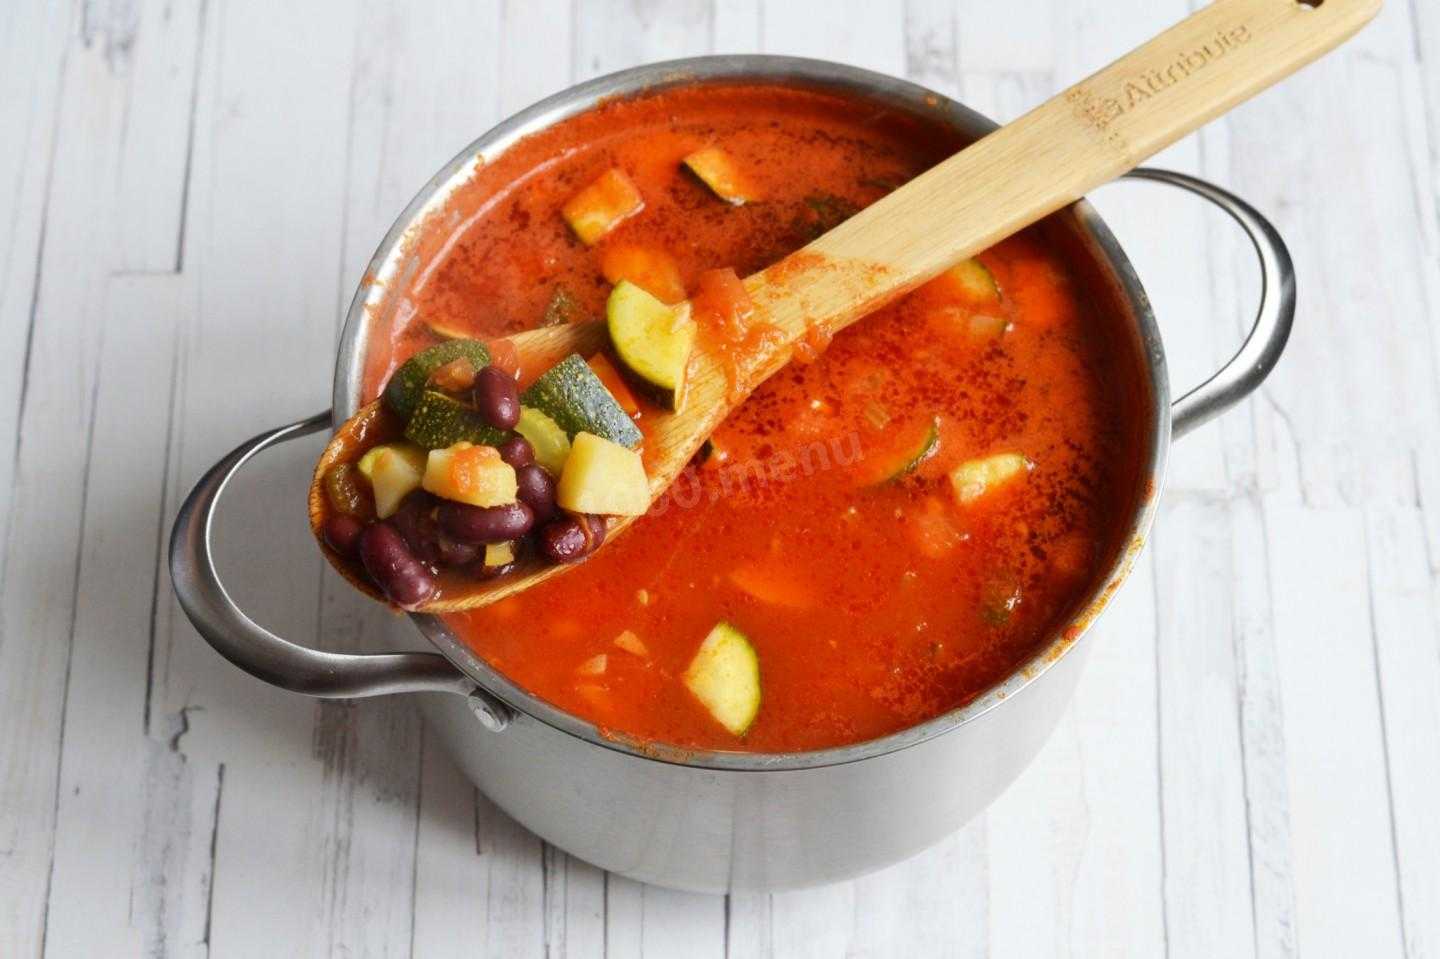 Пошаговый рецепт приготовления фасолевого супа с мясом